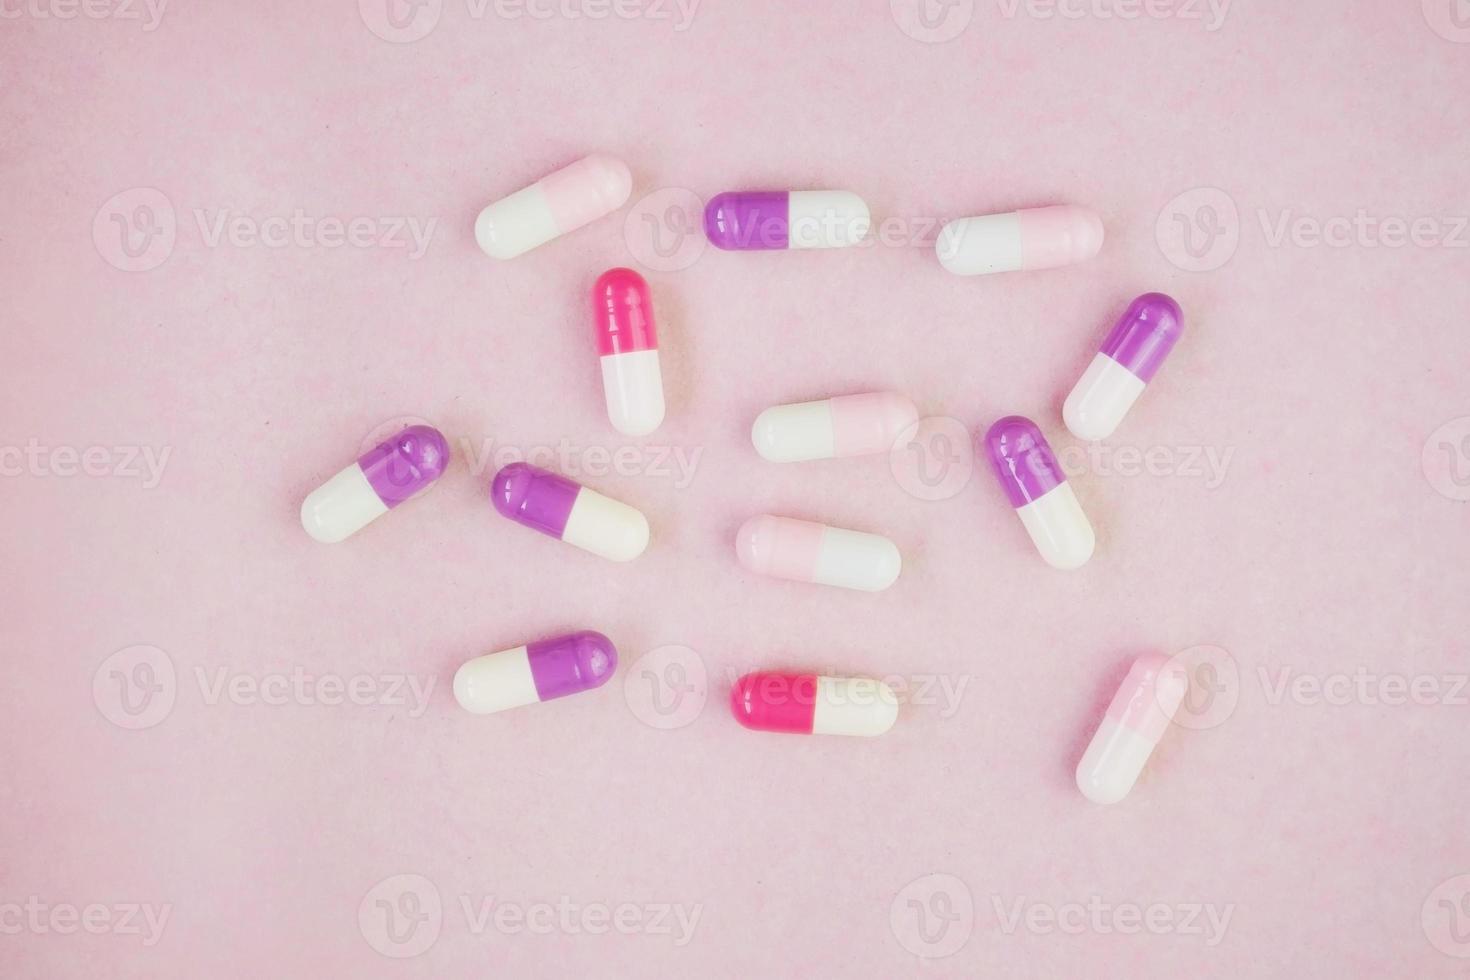 uma macro detalhada de comprimidos e cápsulas com fundo rosa foto